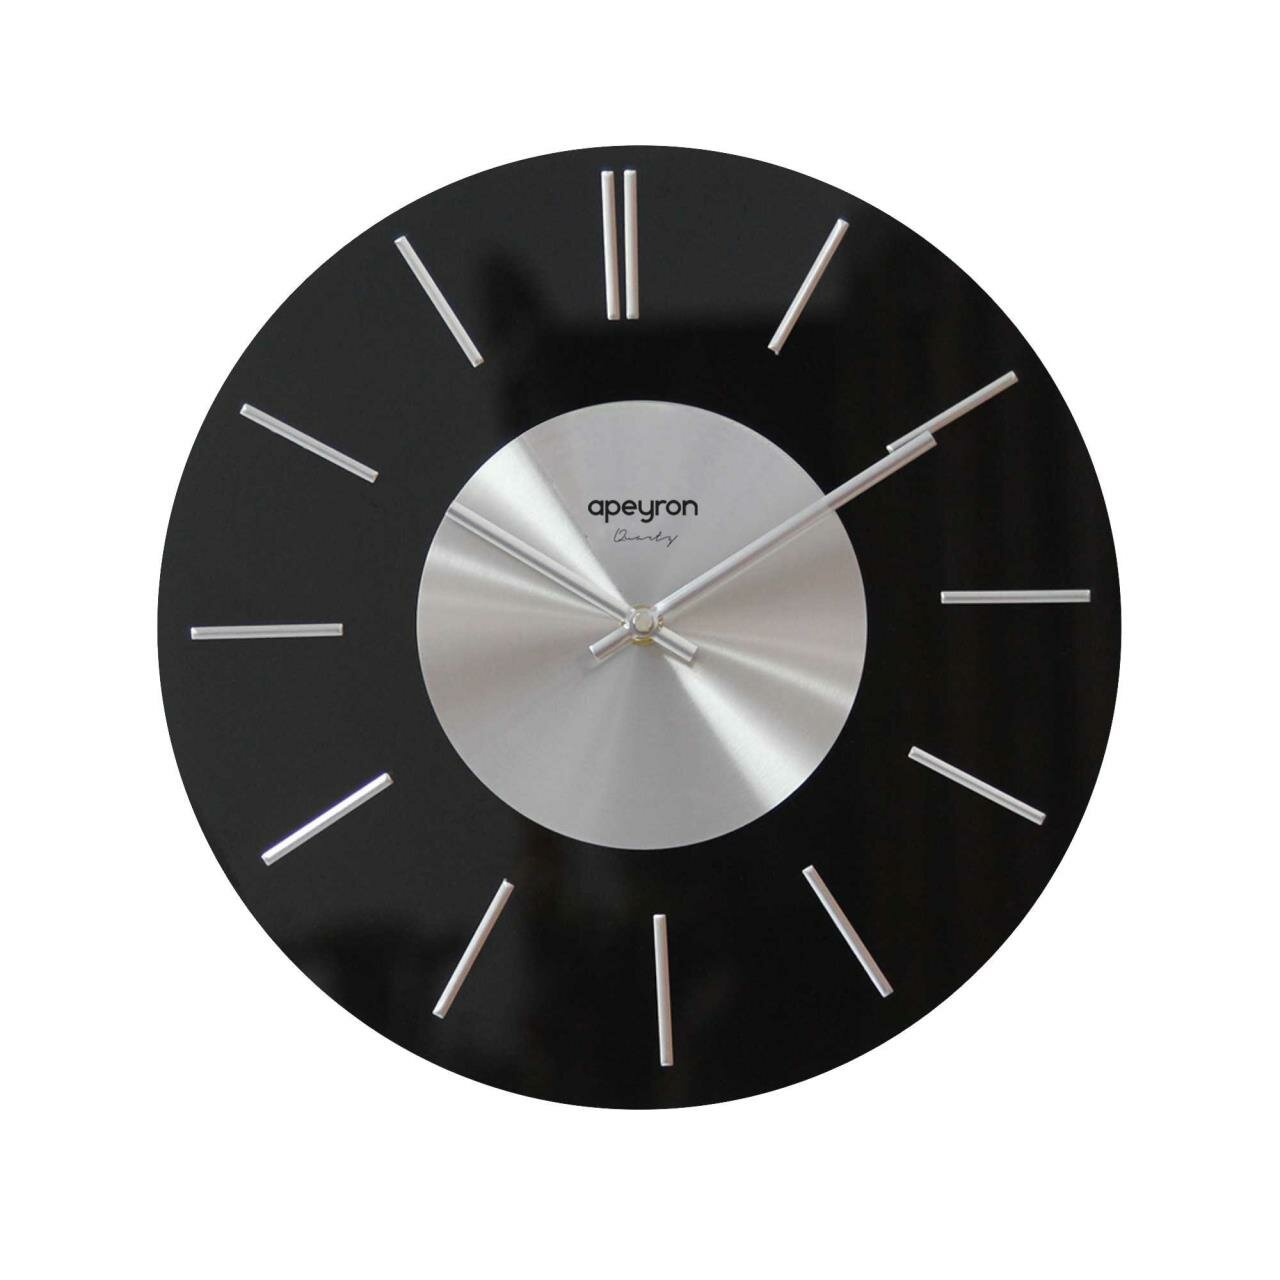 GL200923 Часы настенные, круглые, цвет корпуса черный, стекло, Ø32,7см, источник питания 1 батарейка